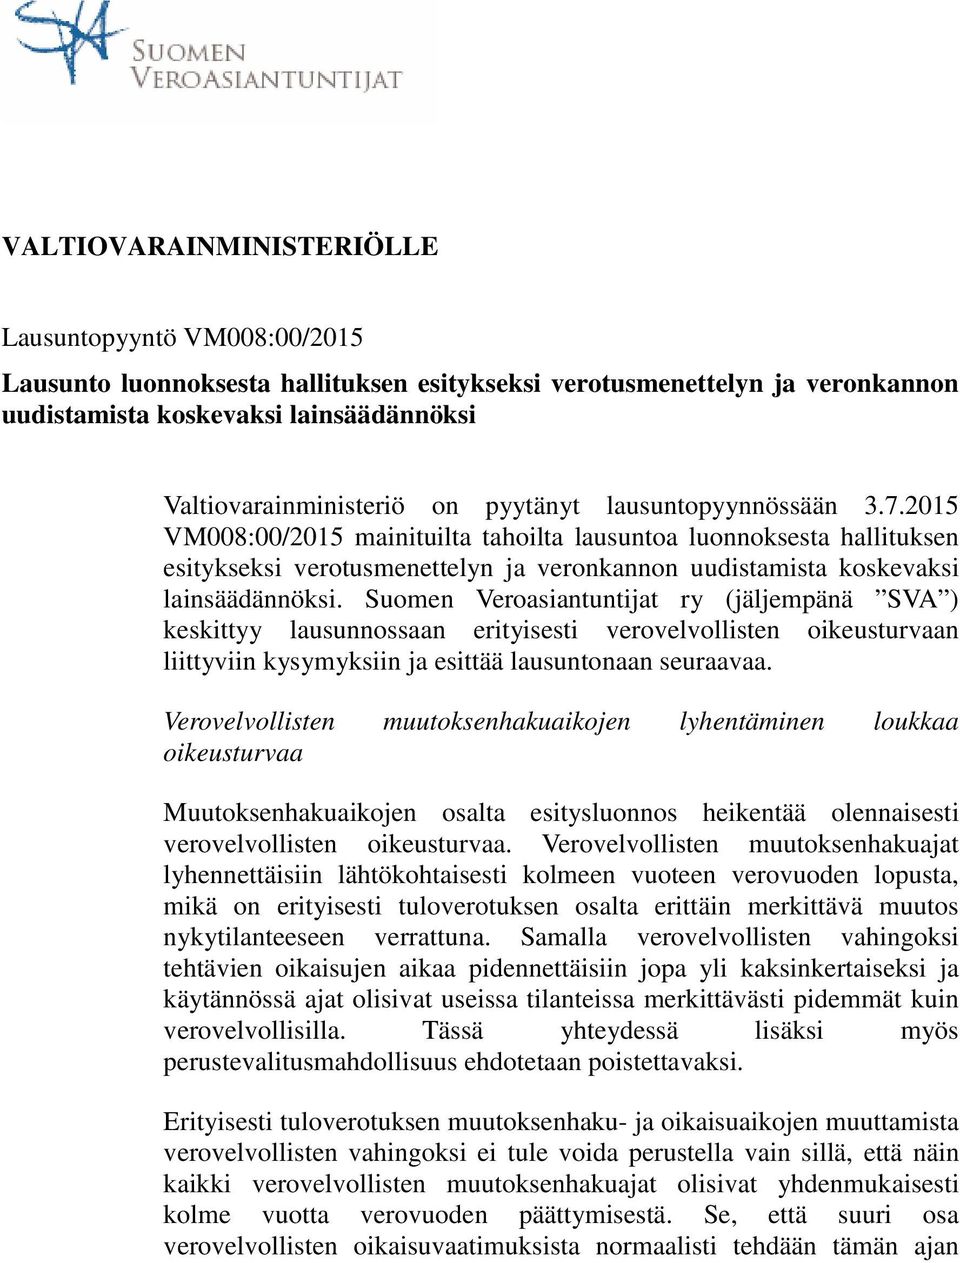 Suomen Veroasiantuntijat ry (jäljempänä SVA ) keskittyy lausunnossaan erityisesti verovelvollisten oikeusturvaan liittyviin kysymyksiin ja esittää lausuntonaan seuraavaa.